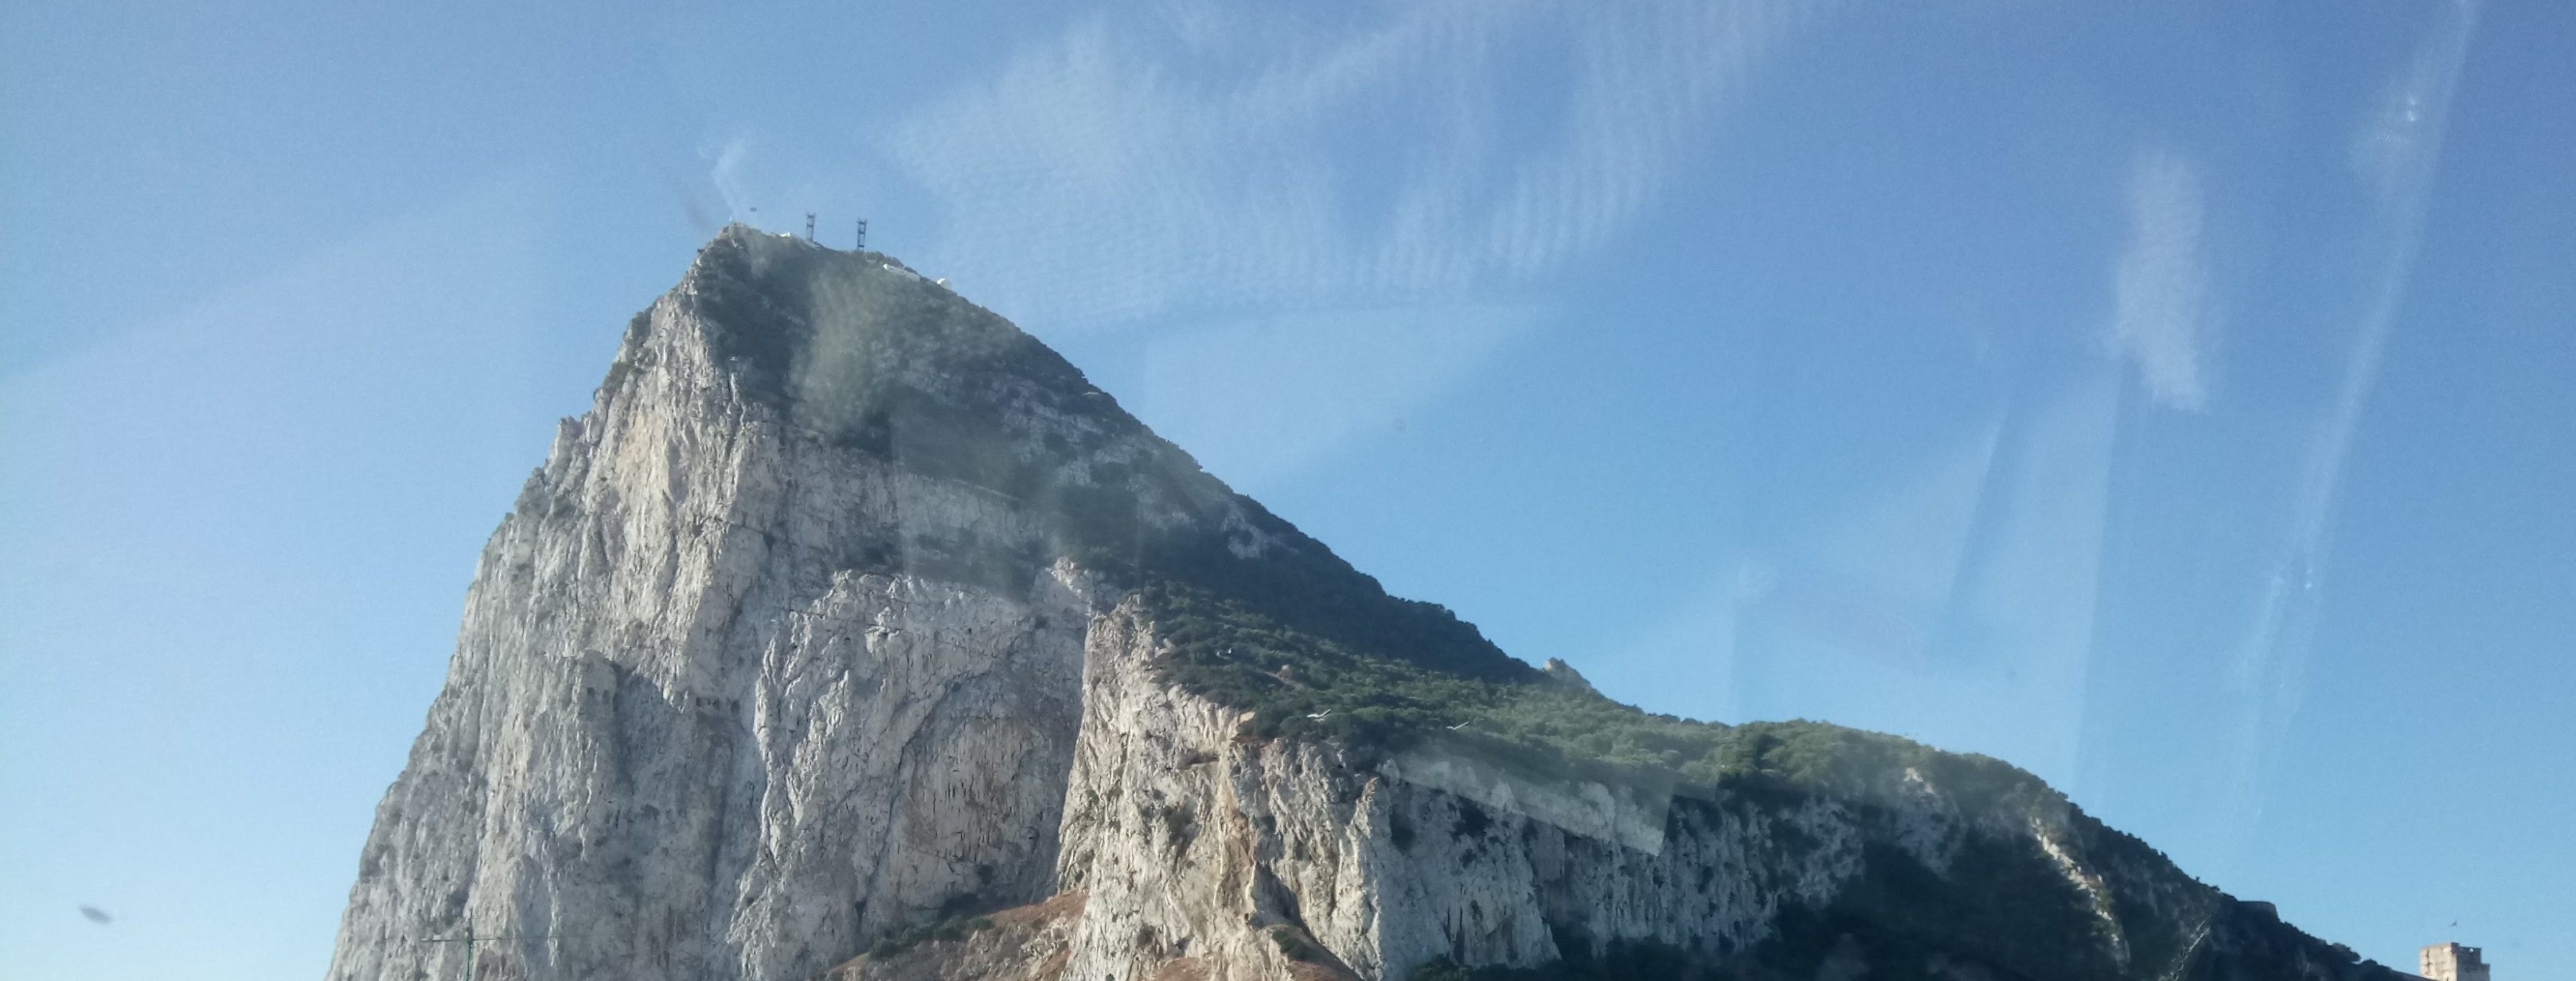 Wie kriegt mann eine authentischer Eindruck von Gibraltar trotz die Toursitenmassen?